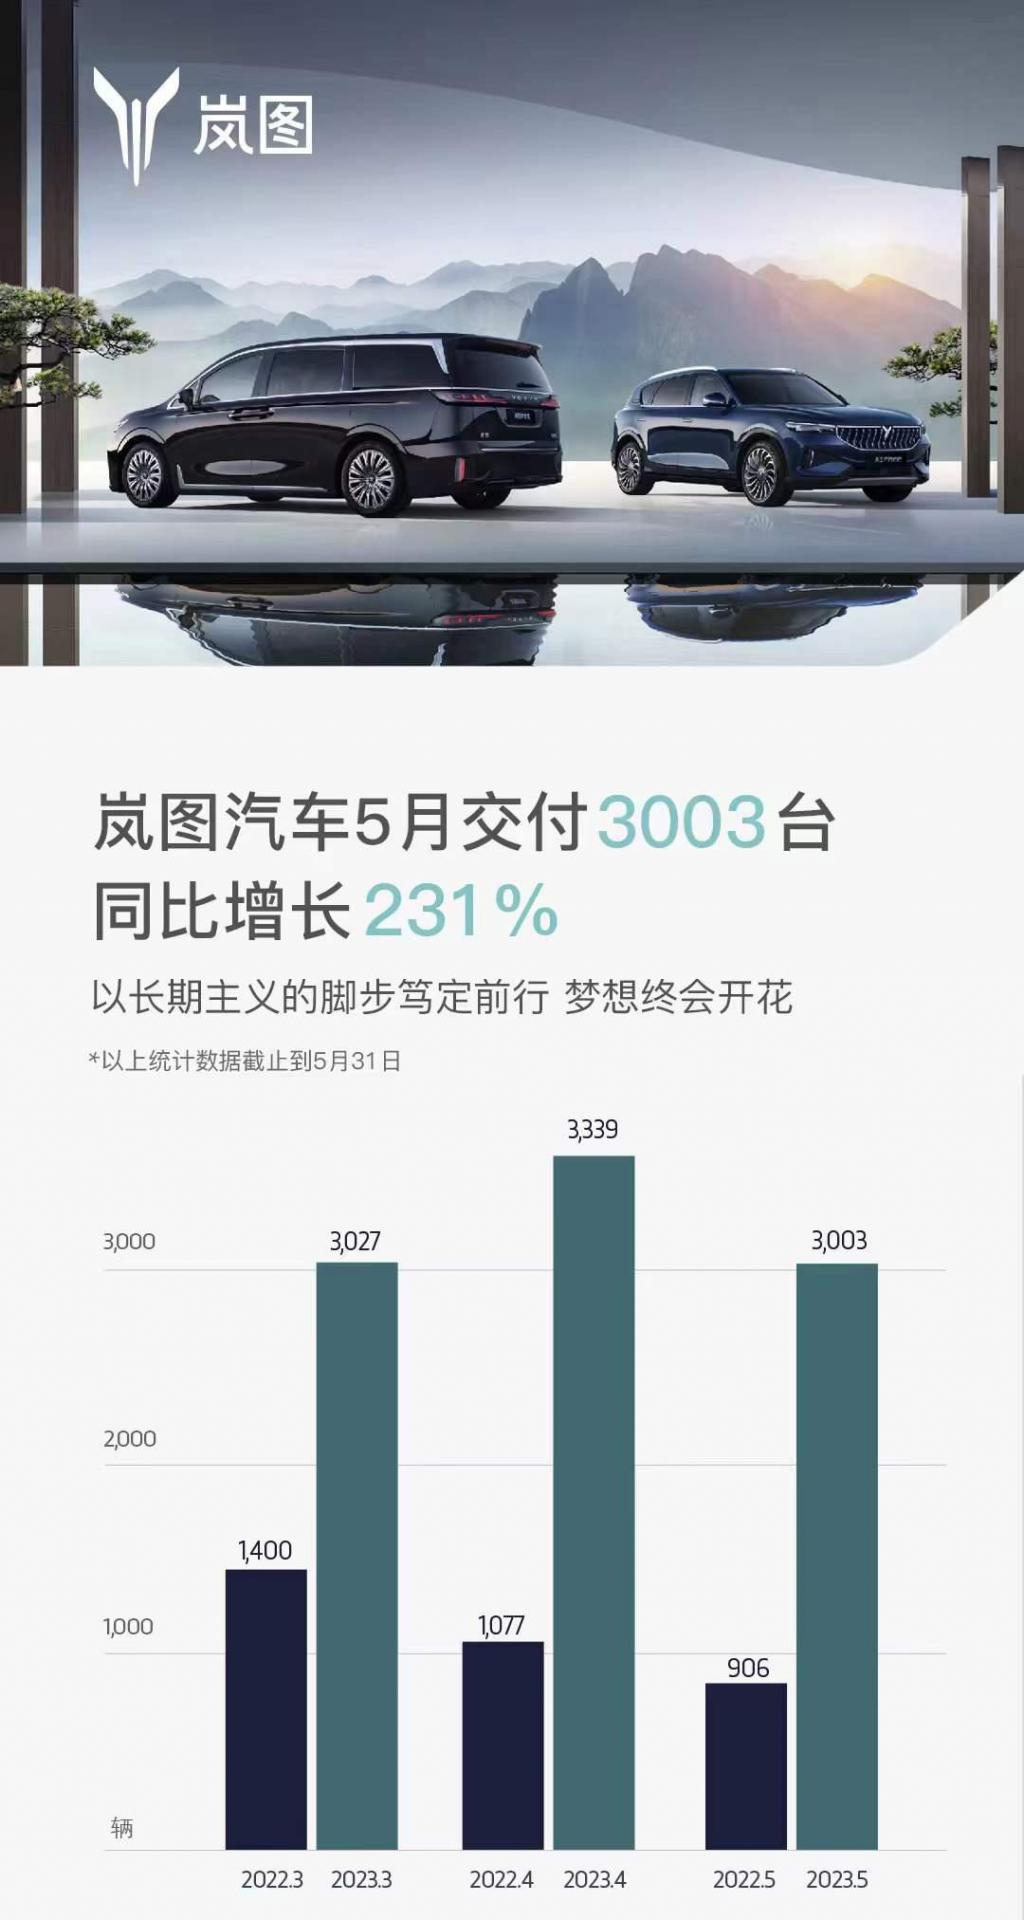 同比增长 231% 岚图汽车 5 月共计交付 3,003 台新车